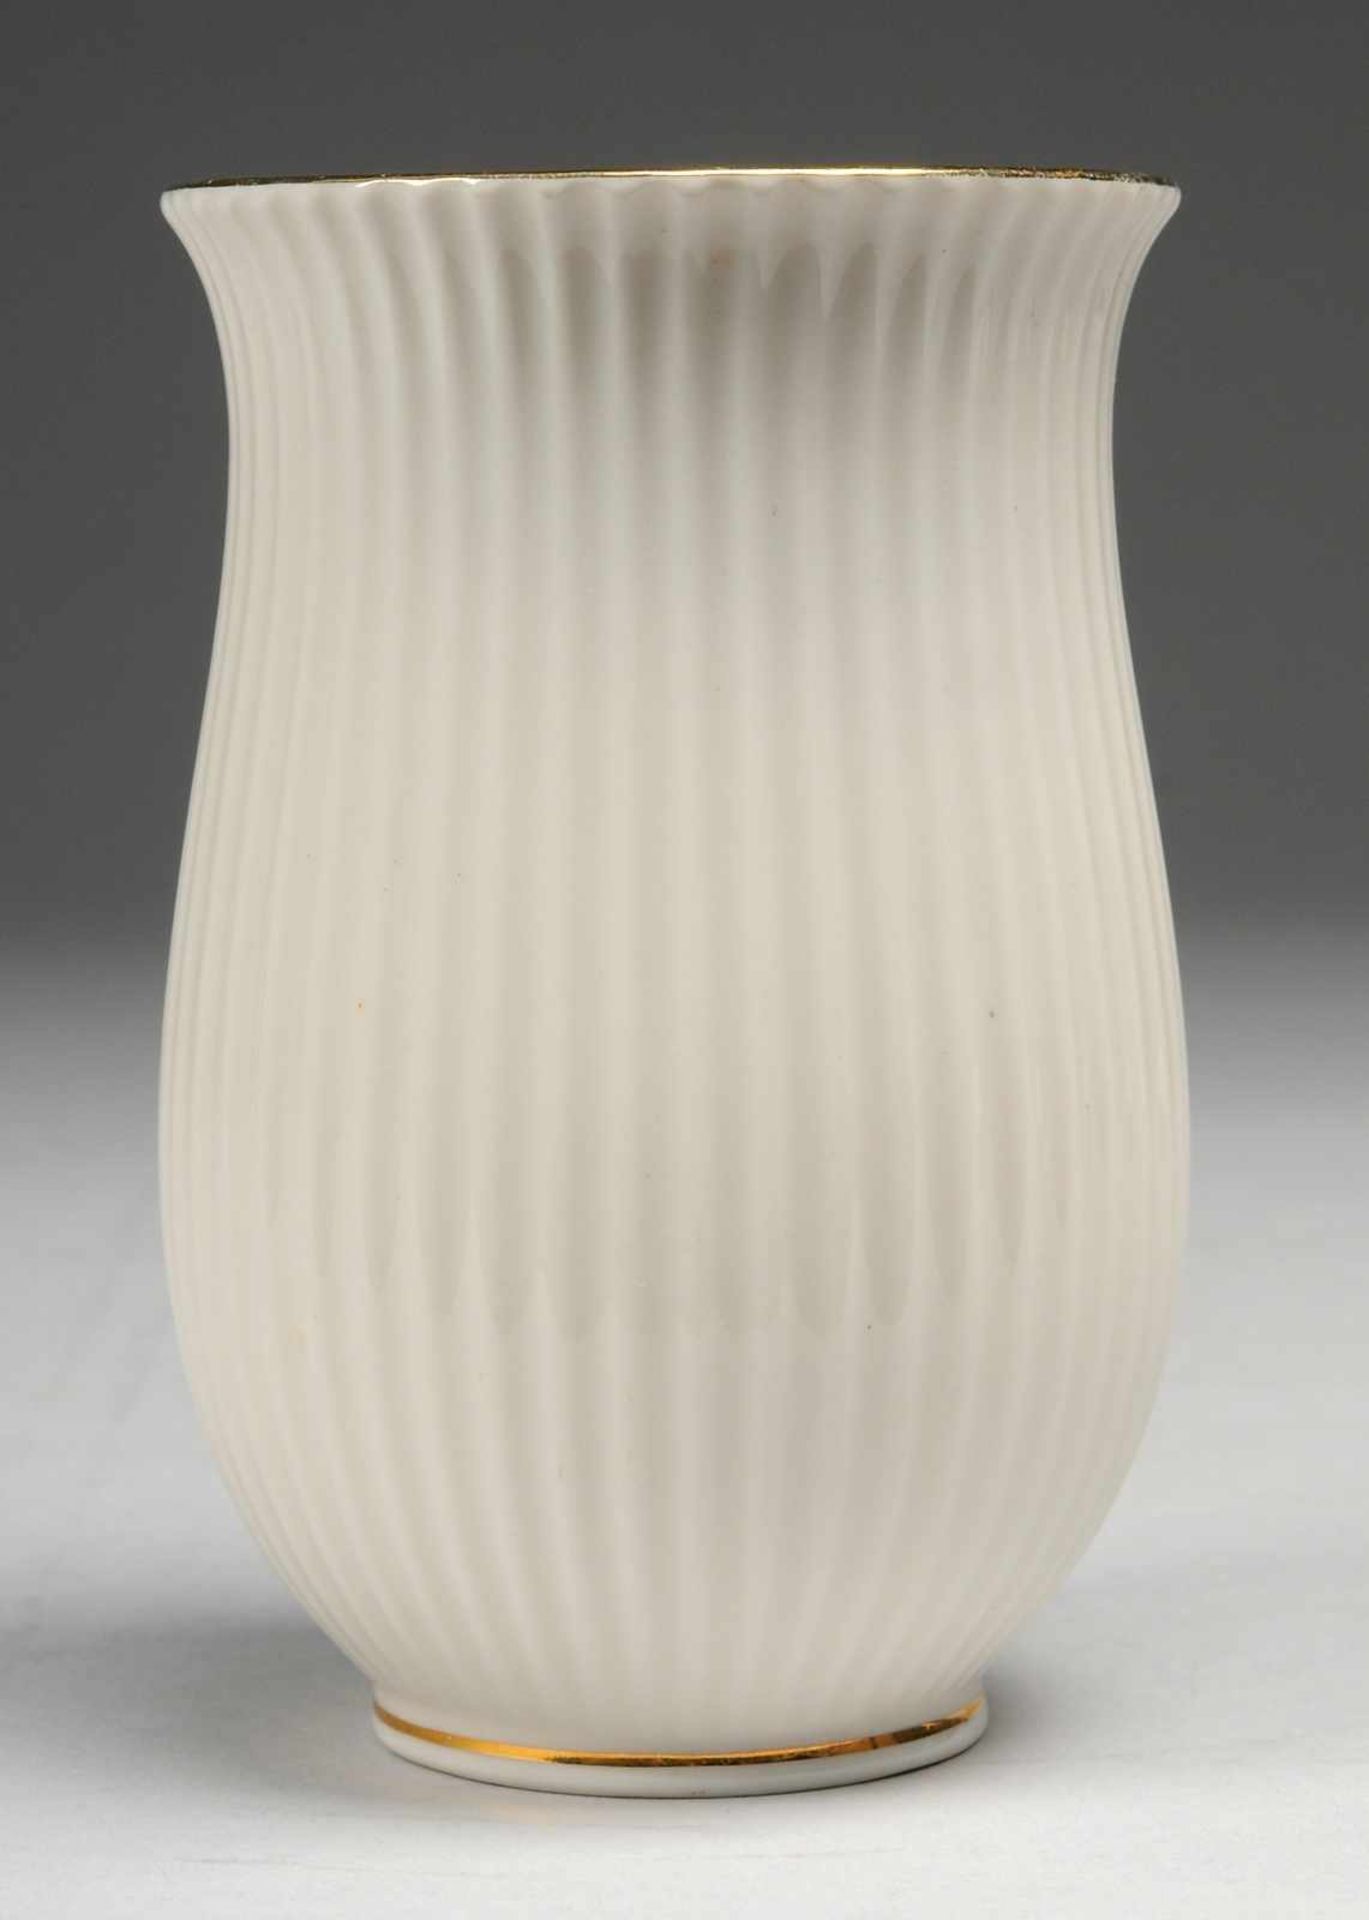 Vase Weiß, glasiert. L. geschwungene Form mit vertikalem Linienreliefdekor. Goldränder. Firmenmarke.